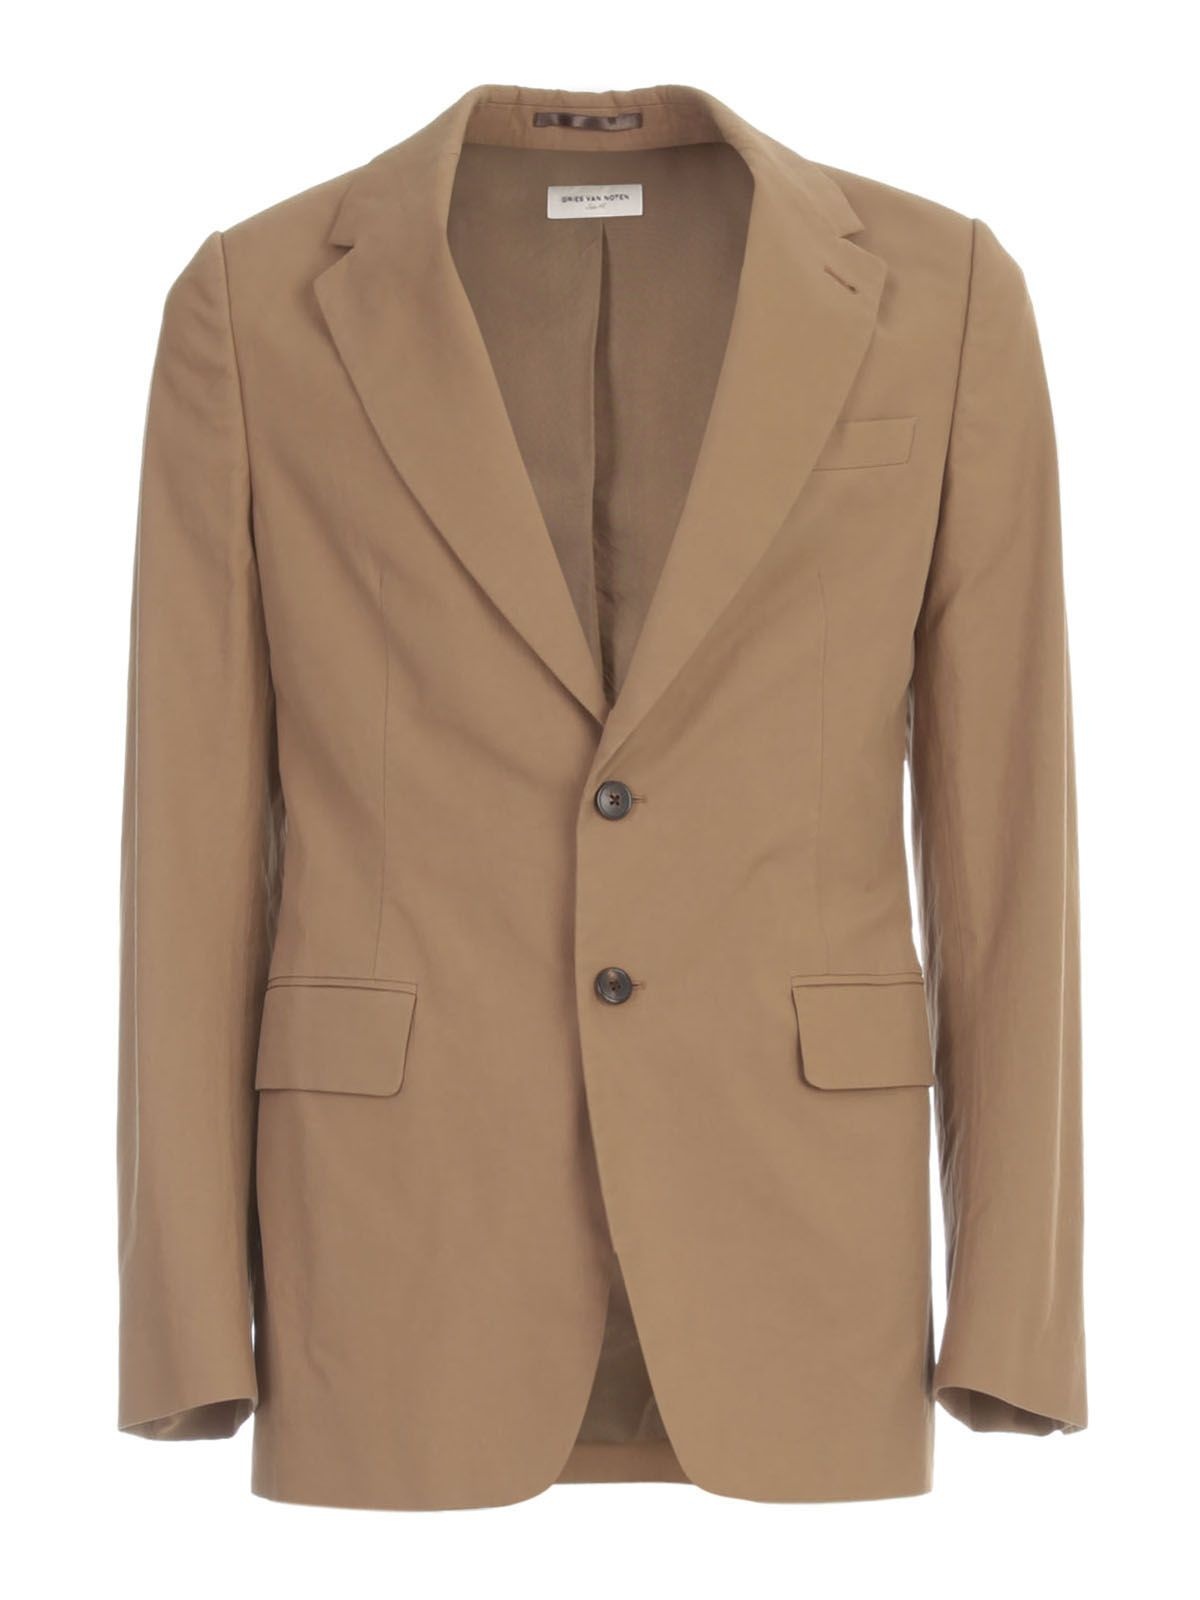 Dries Van Noten Man`s brown cotton jacket - 1